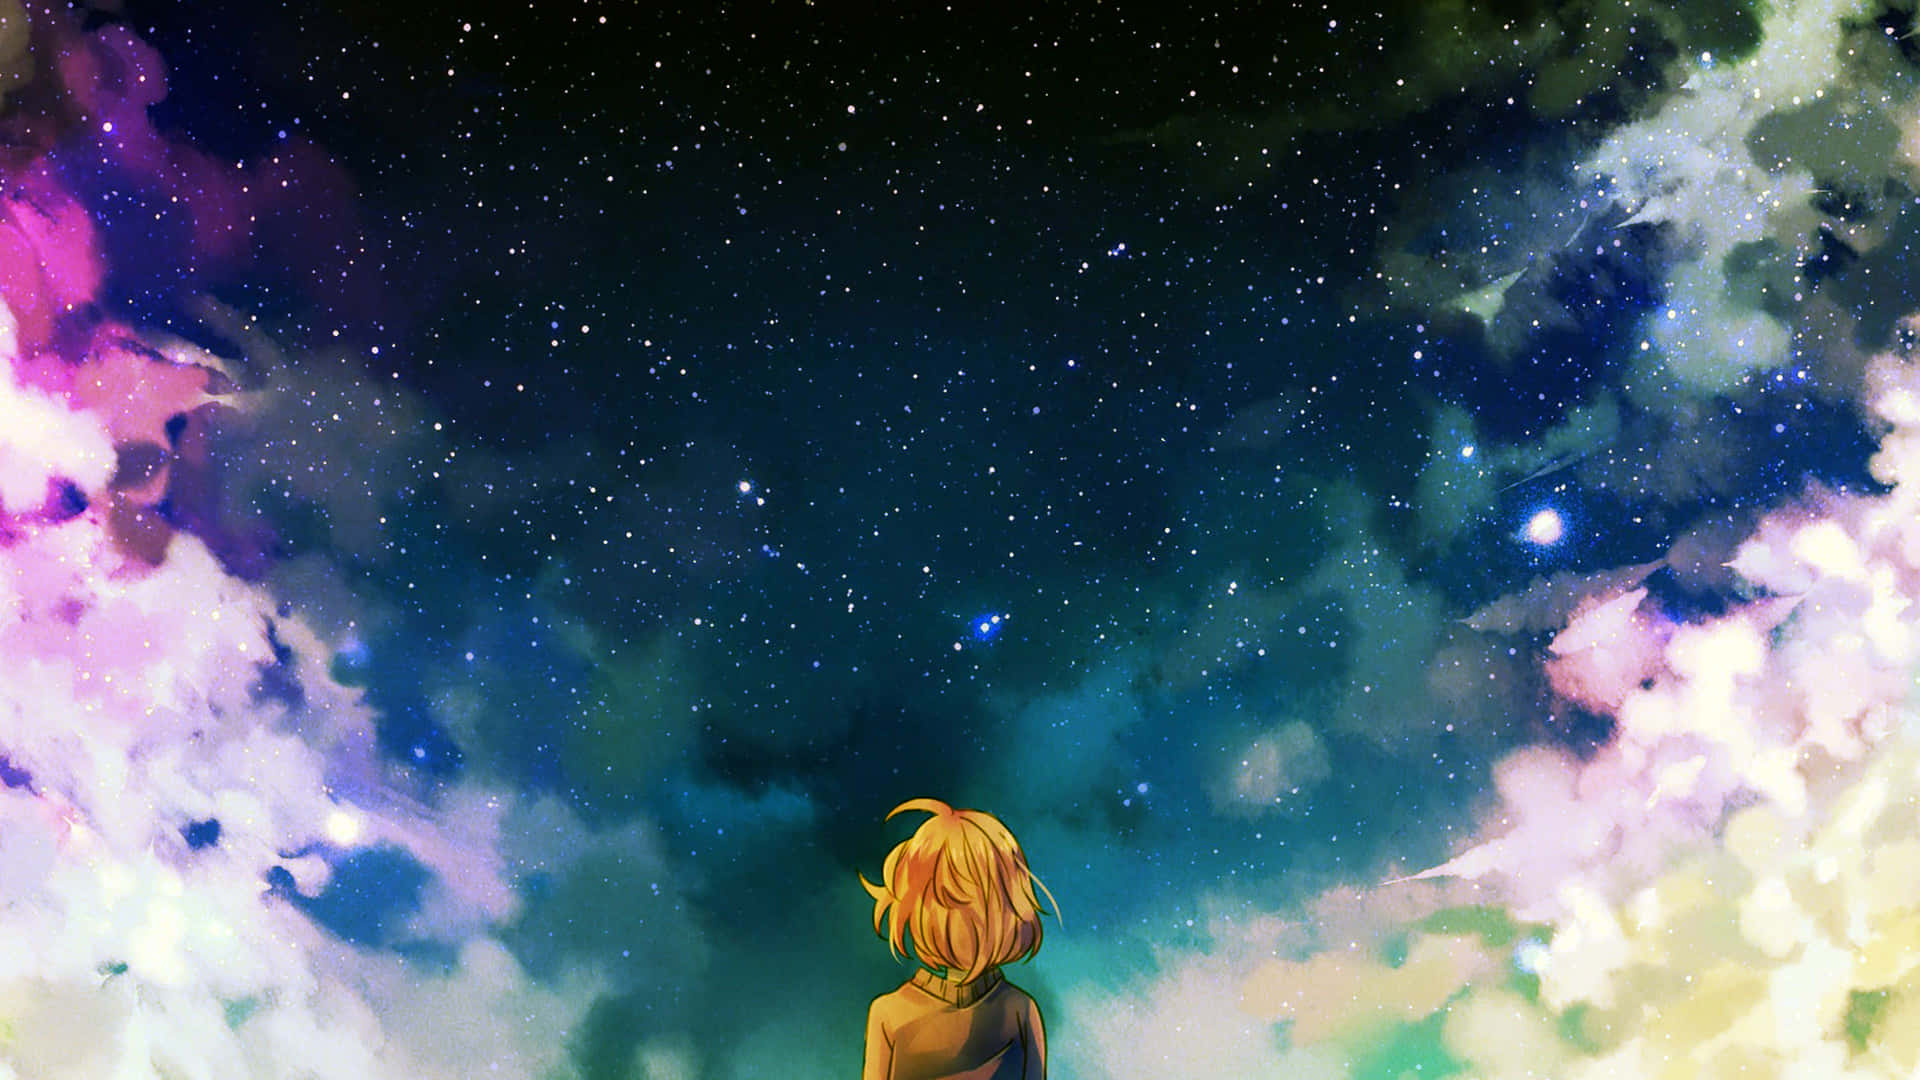 Traurigkeitund Melancholie Erfüllen Die Herzzerreißende Atmosphäre In Dieser Sic Anime Landschaft. Wallpaper